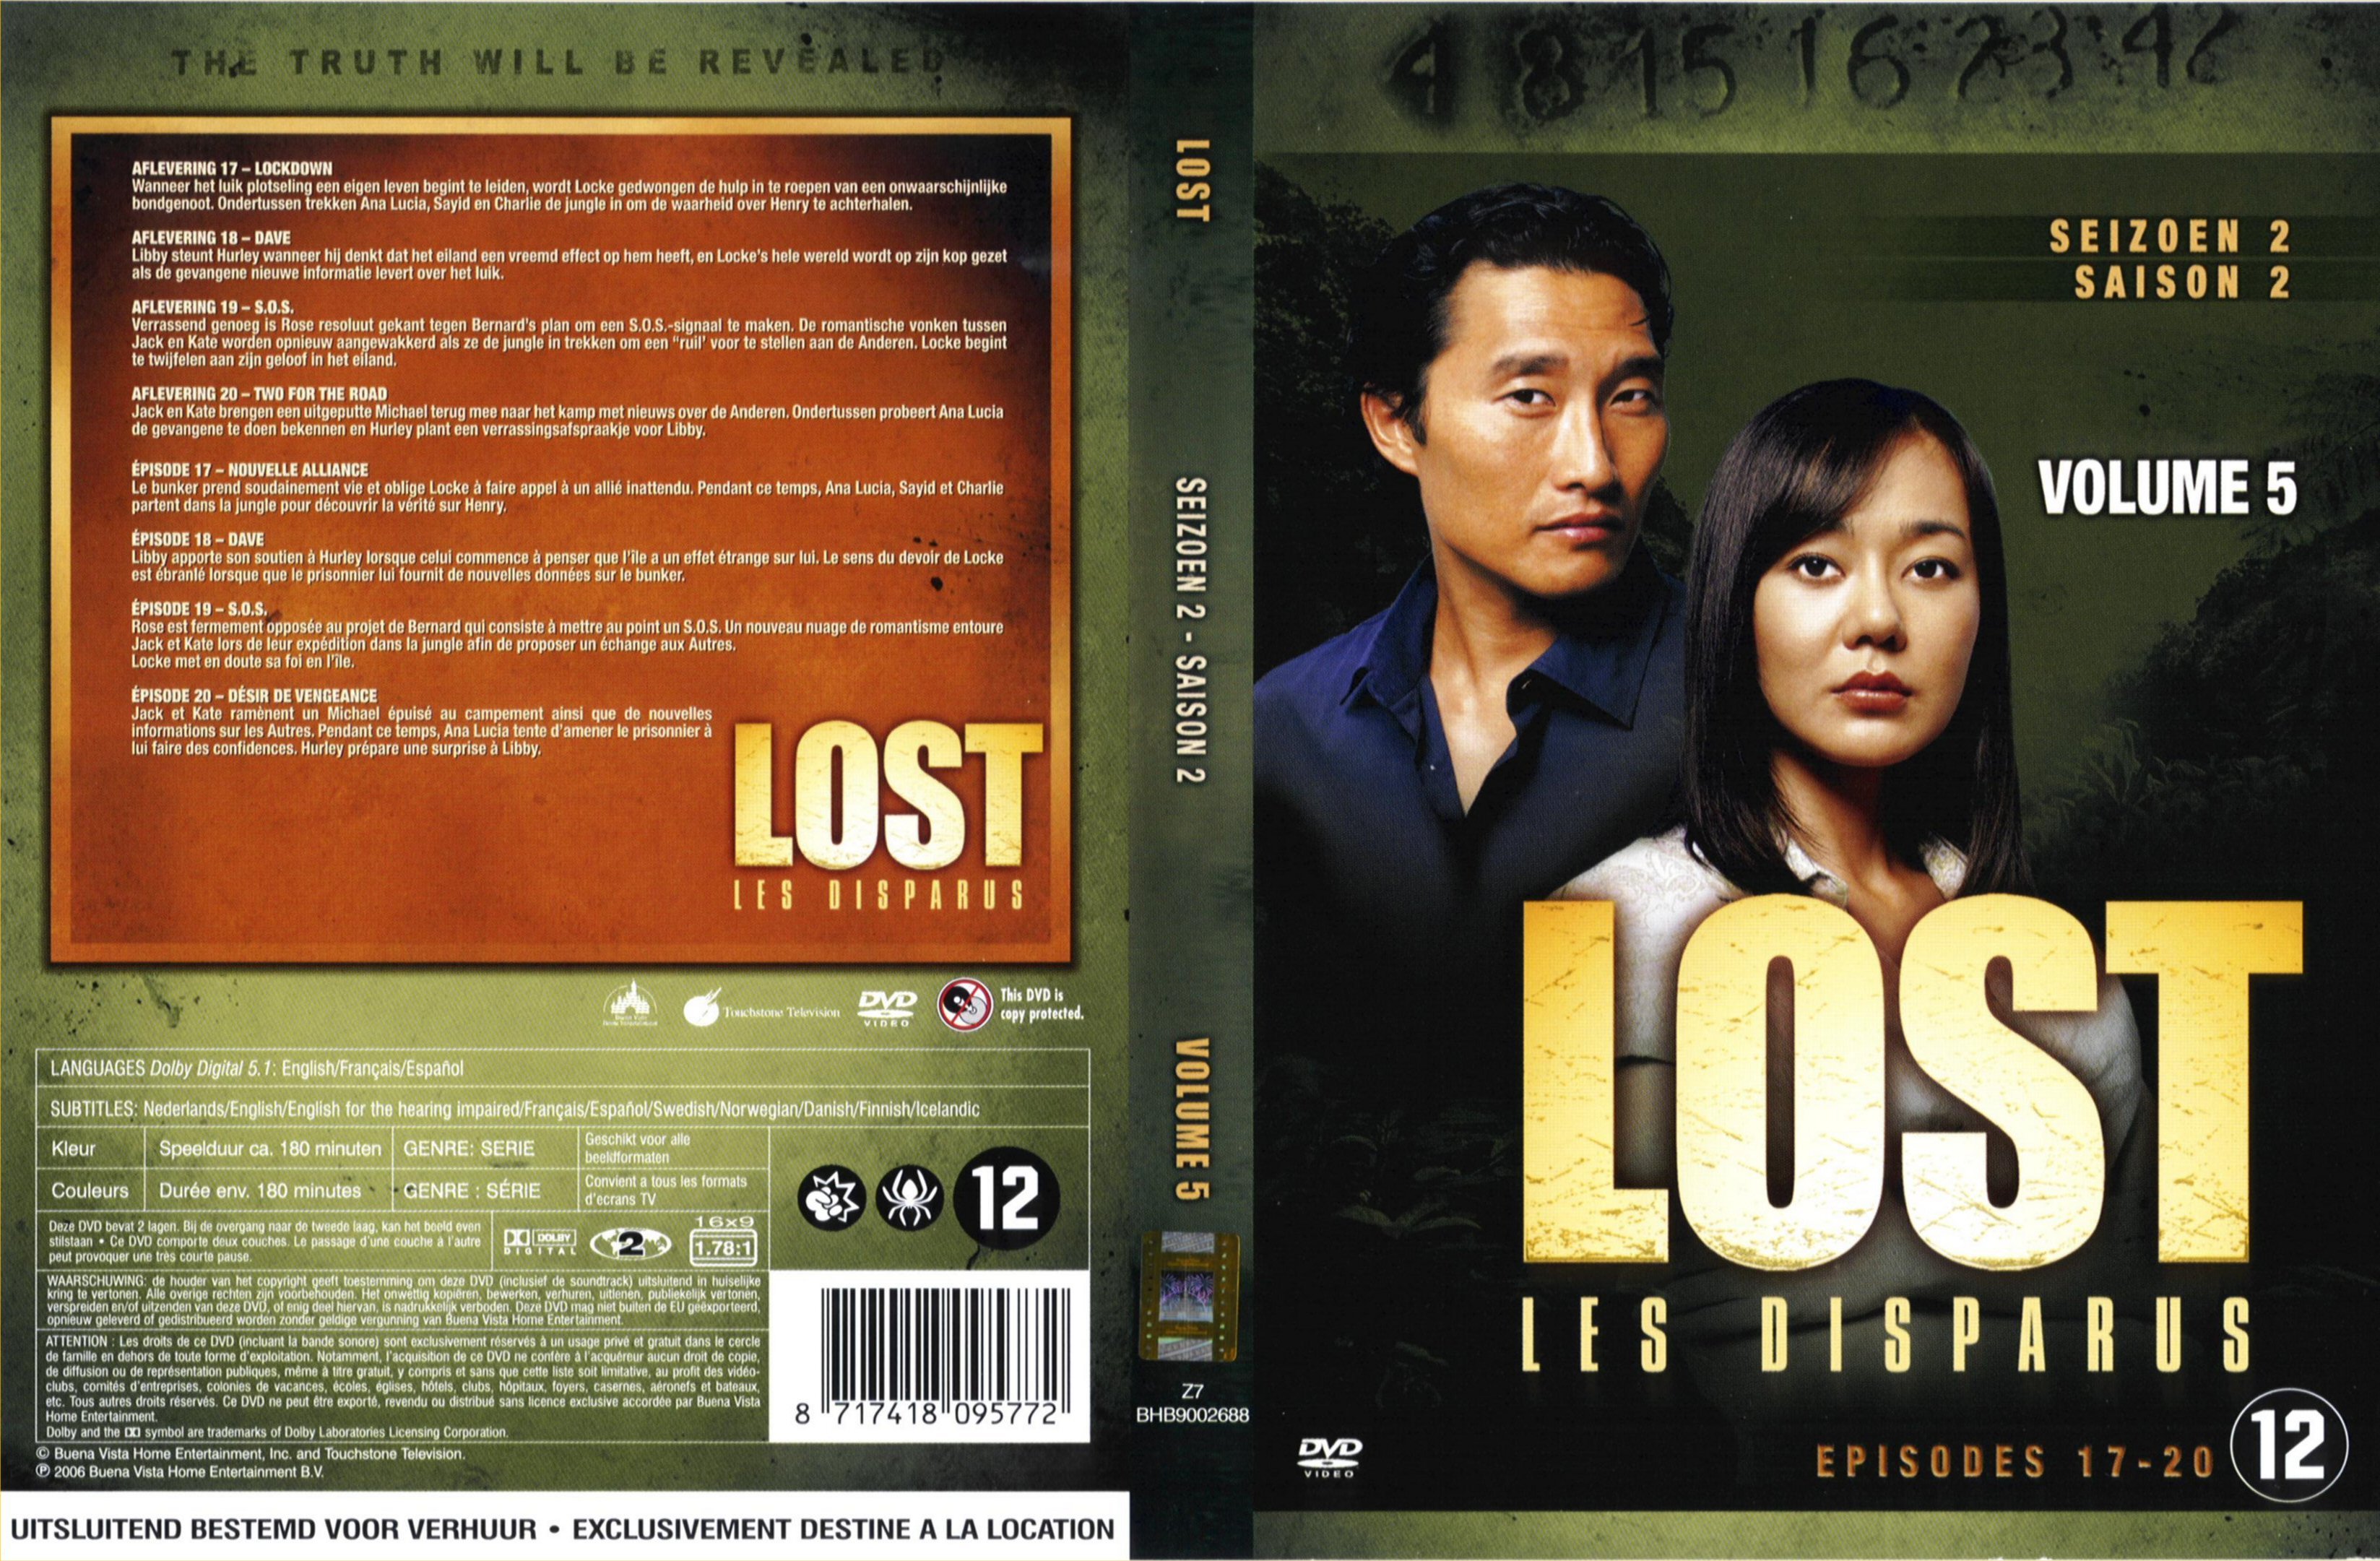 Jaquette DVD Lost Saison 2 DVD 5 v2